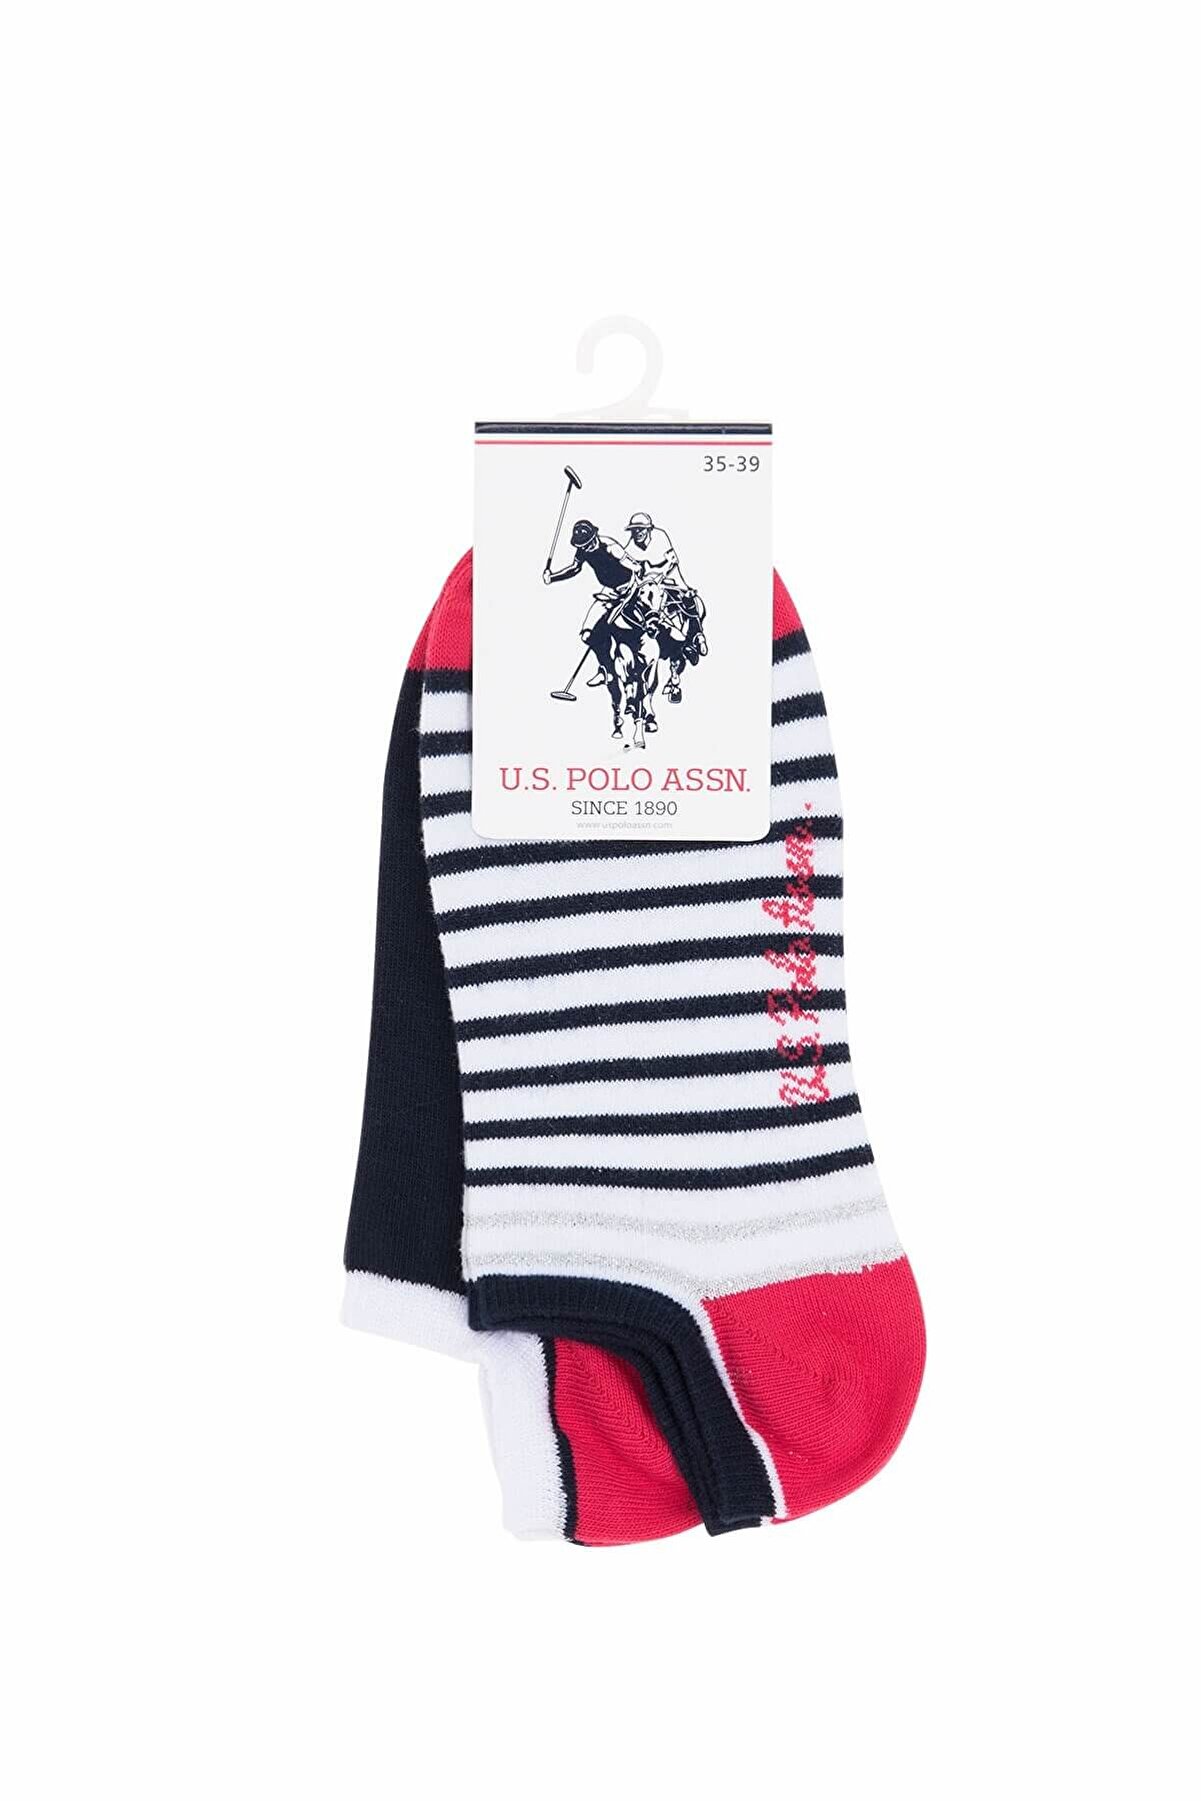 U.S. Polo Assn. Kadın Lacivert Çizgili Lacivert Düz 2'li Patik Çorabı